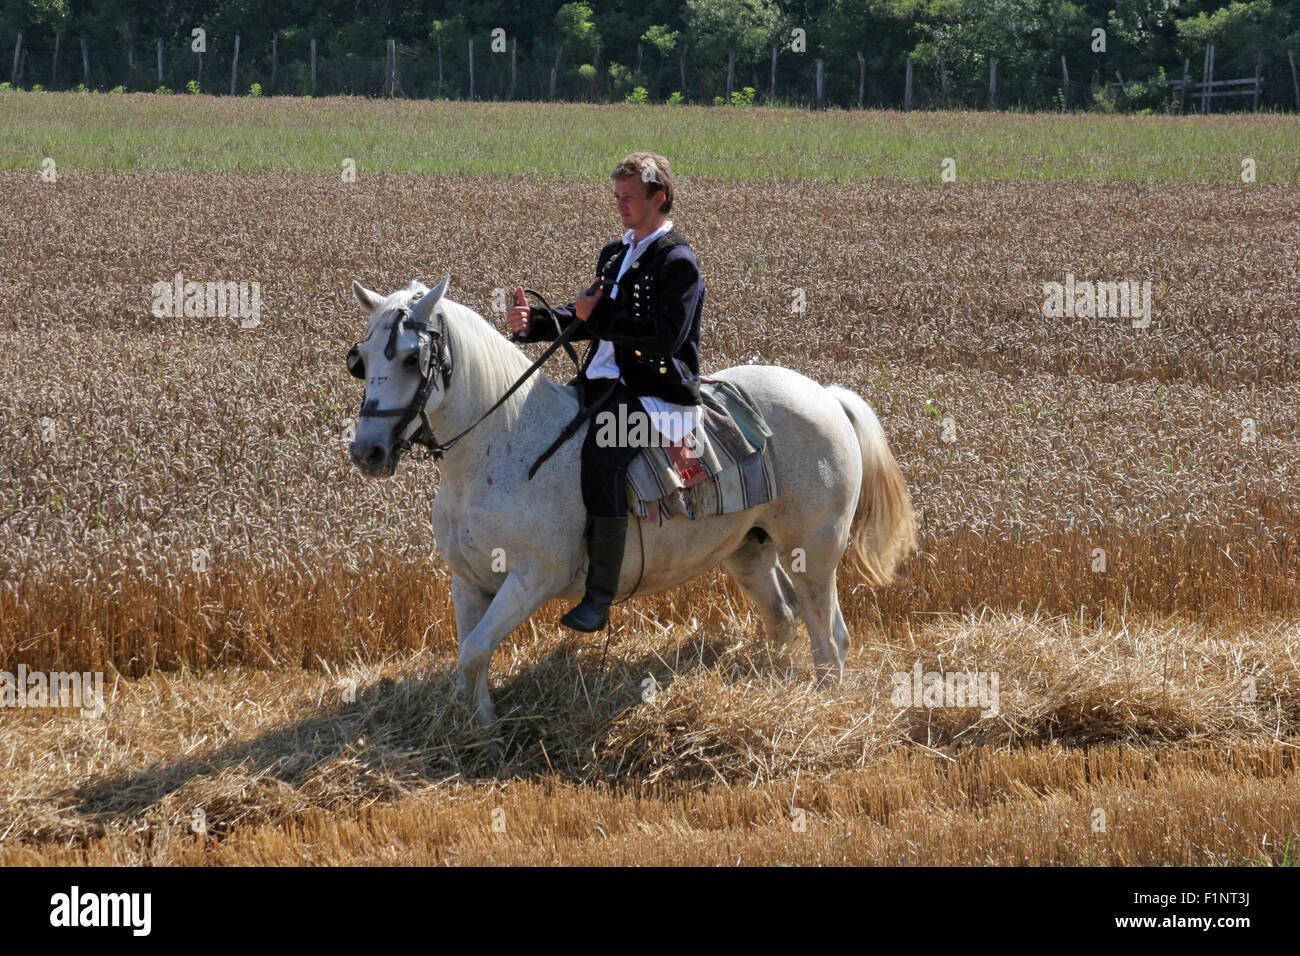 Homme à cheval habillés en costume national, équitation à travers les champs de blé au cours de la récolte de blé dans la région de Davor, Slavonie, Croatie Banque D'Images